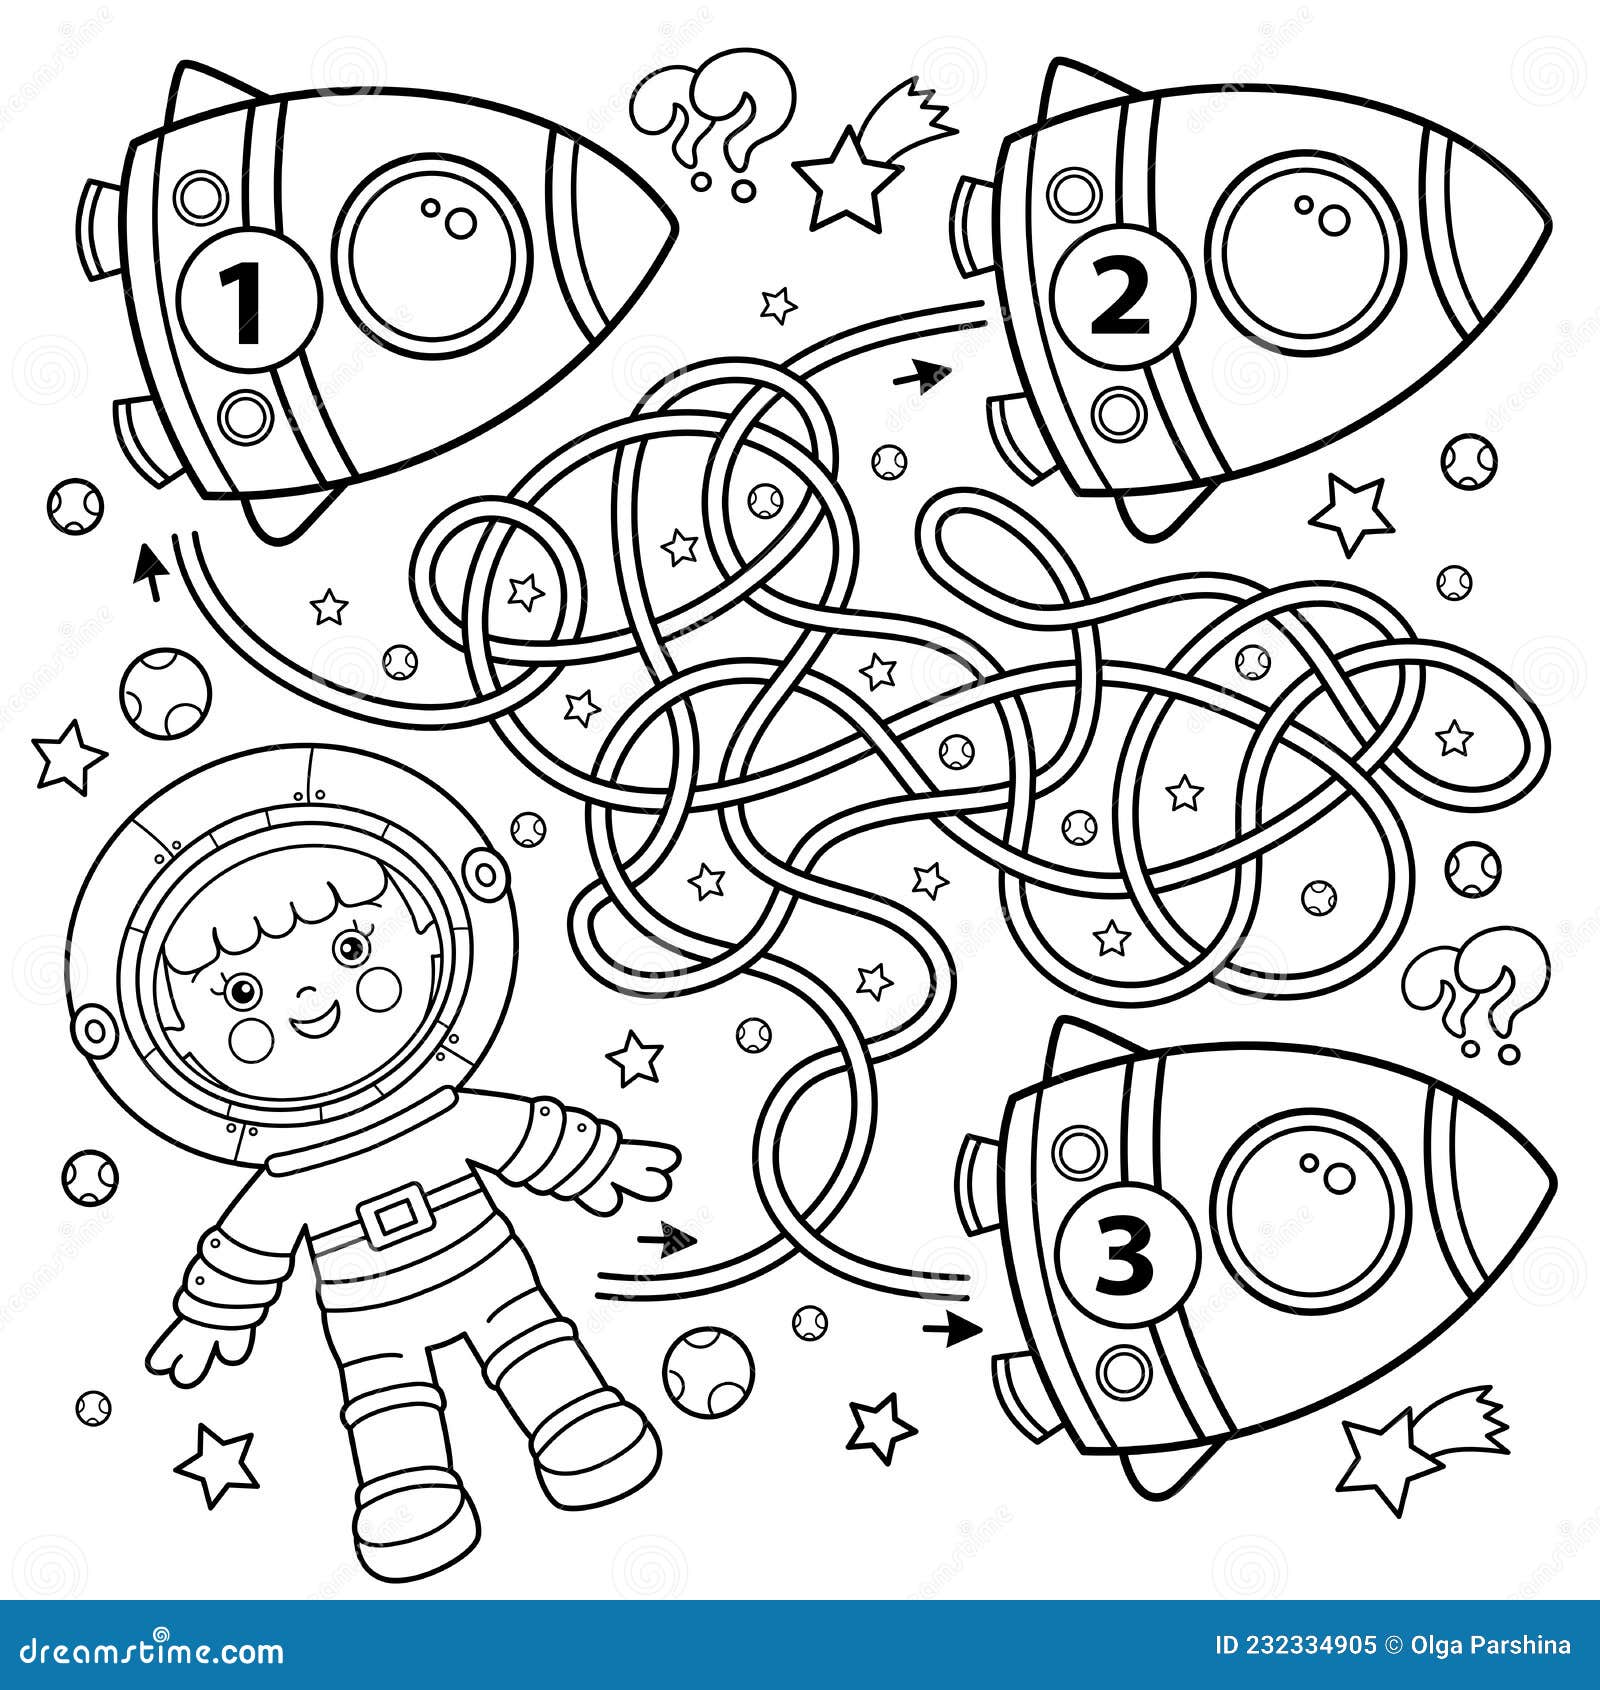 Labirinto Ou Labirinto Jogo. Puzzle. Desenhos Animados De Astronauta Com  Foguete No Espaço. Pequeno Astronauta Ou Cosmonauta. Livro De Colorir Para  Crianças. Royalty Free SVG, Cliparts, Vetores, e Ilustrações Stock. Image  176820676